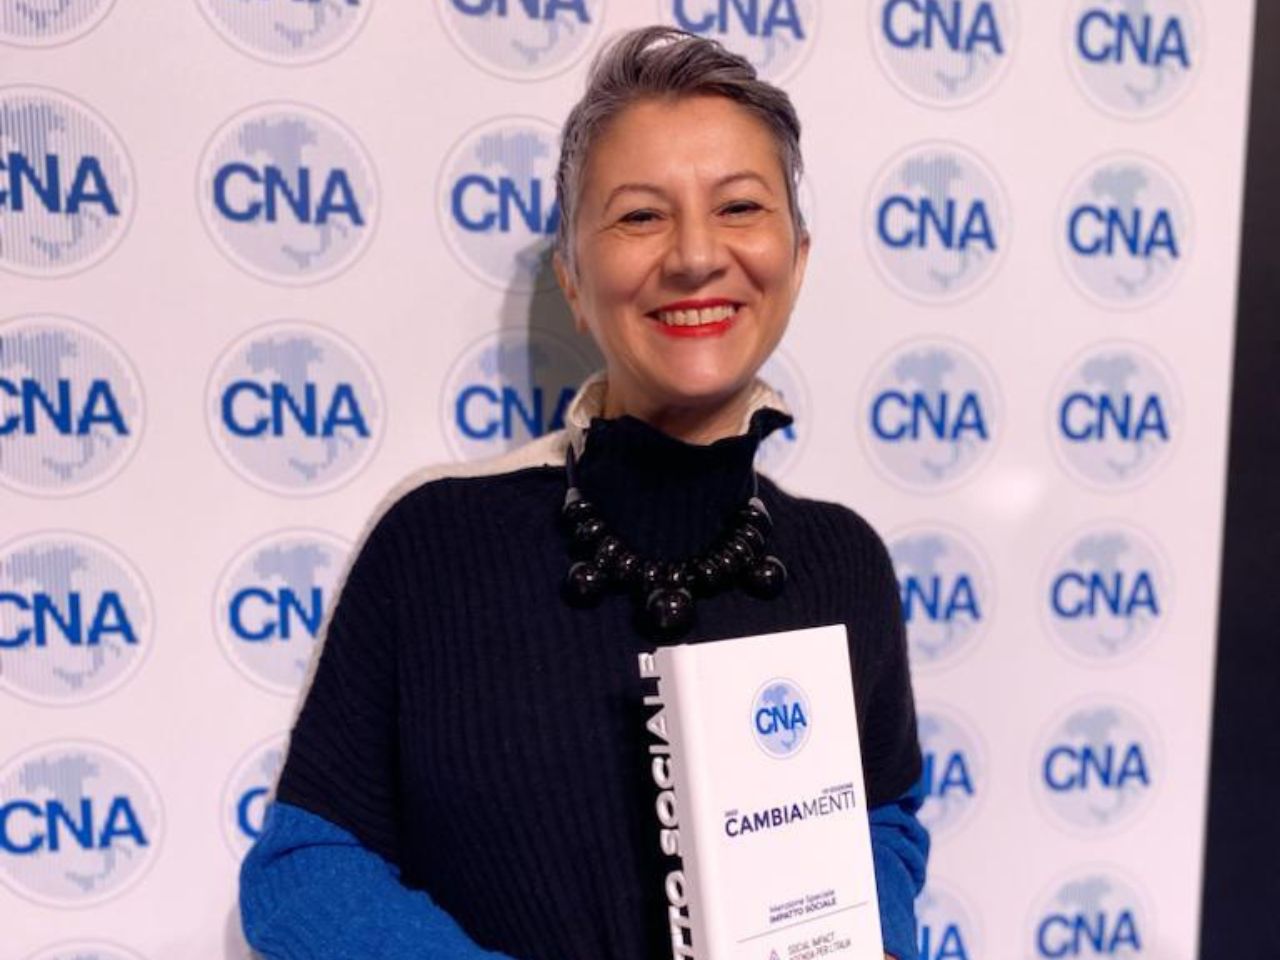 Premio Cambiamenti: Gaia Segattini Knotwear vince il riconoscimento per l’impatto sociale